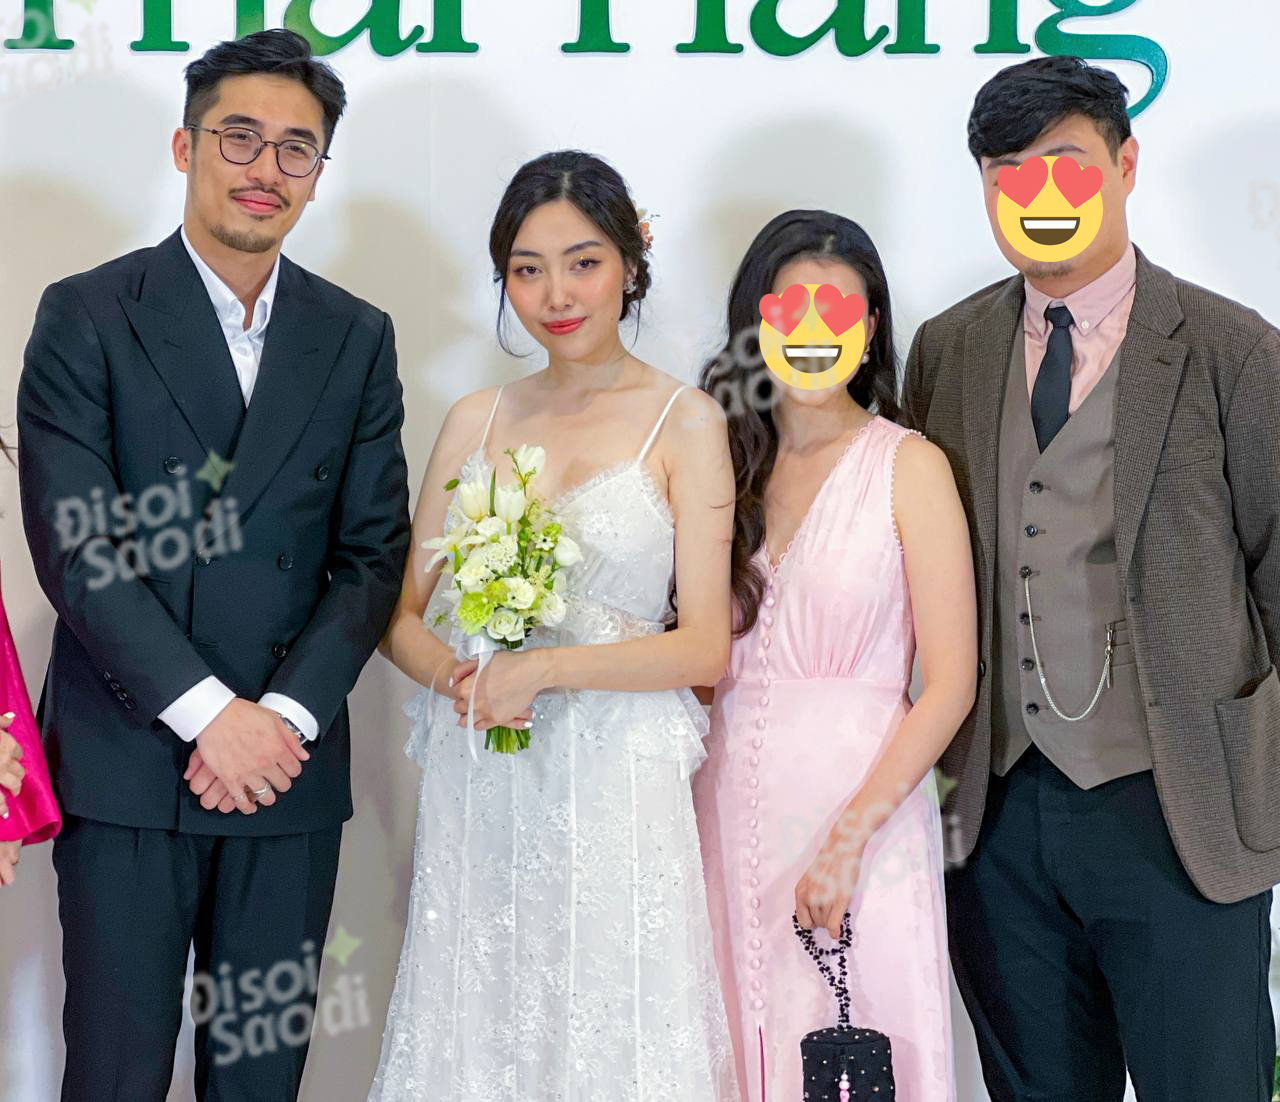 HOT: Vũ. bất ngờ tổ chức đám cưới tại Hà Nội, visual cô dâu chú rể nổi bật - Ảnh 2.